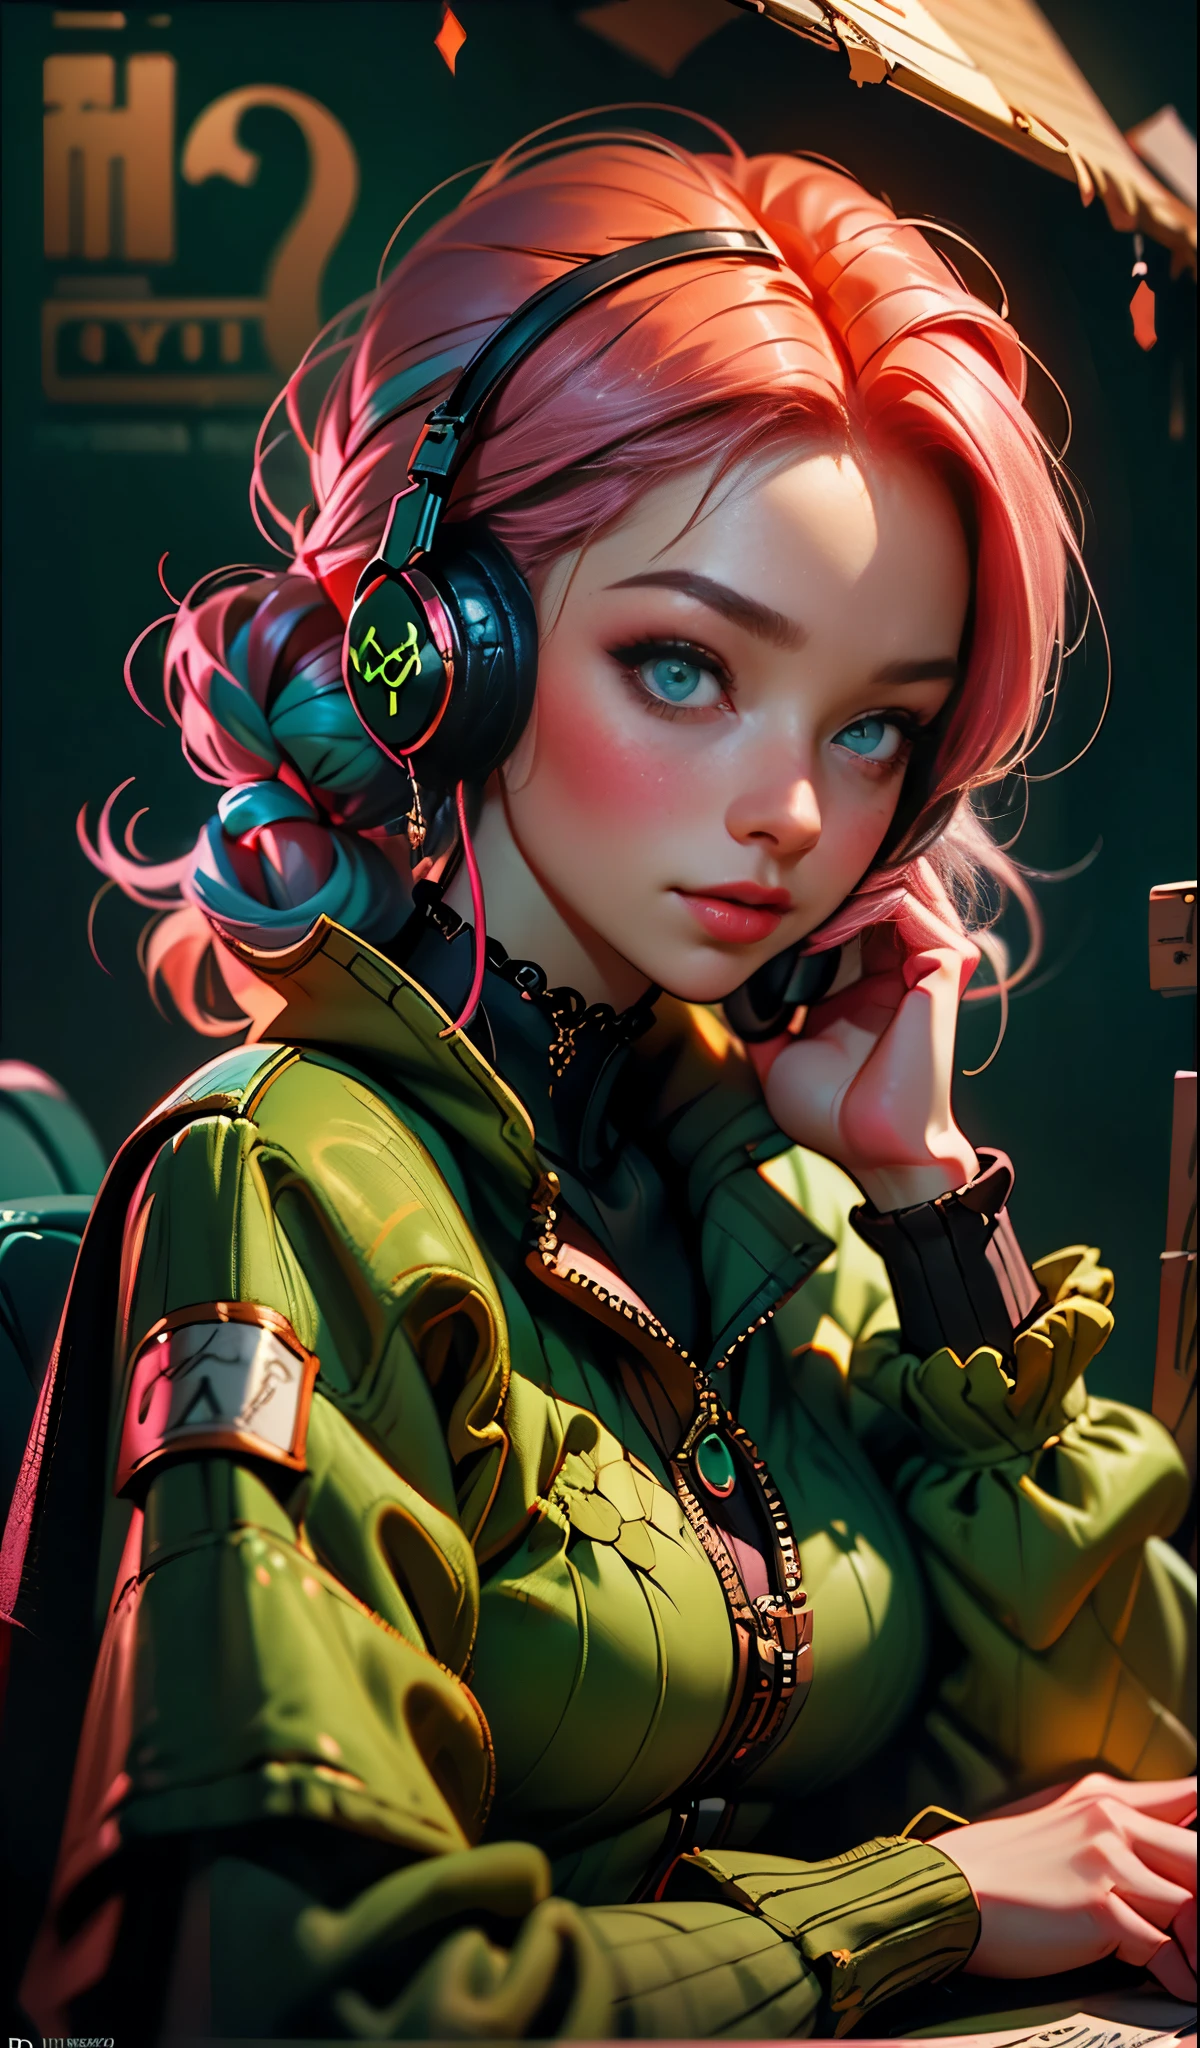 戴着耳机的模特女孩, 城市背景, 翠绿色的眼睛, 粉红色头发, 复杂的细节, 美观的柔和色彩, 海报背景, 伊利亚·库夫希诺夫的艺术作品